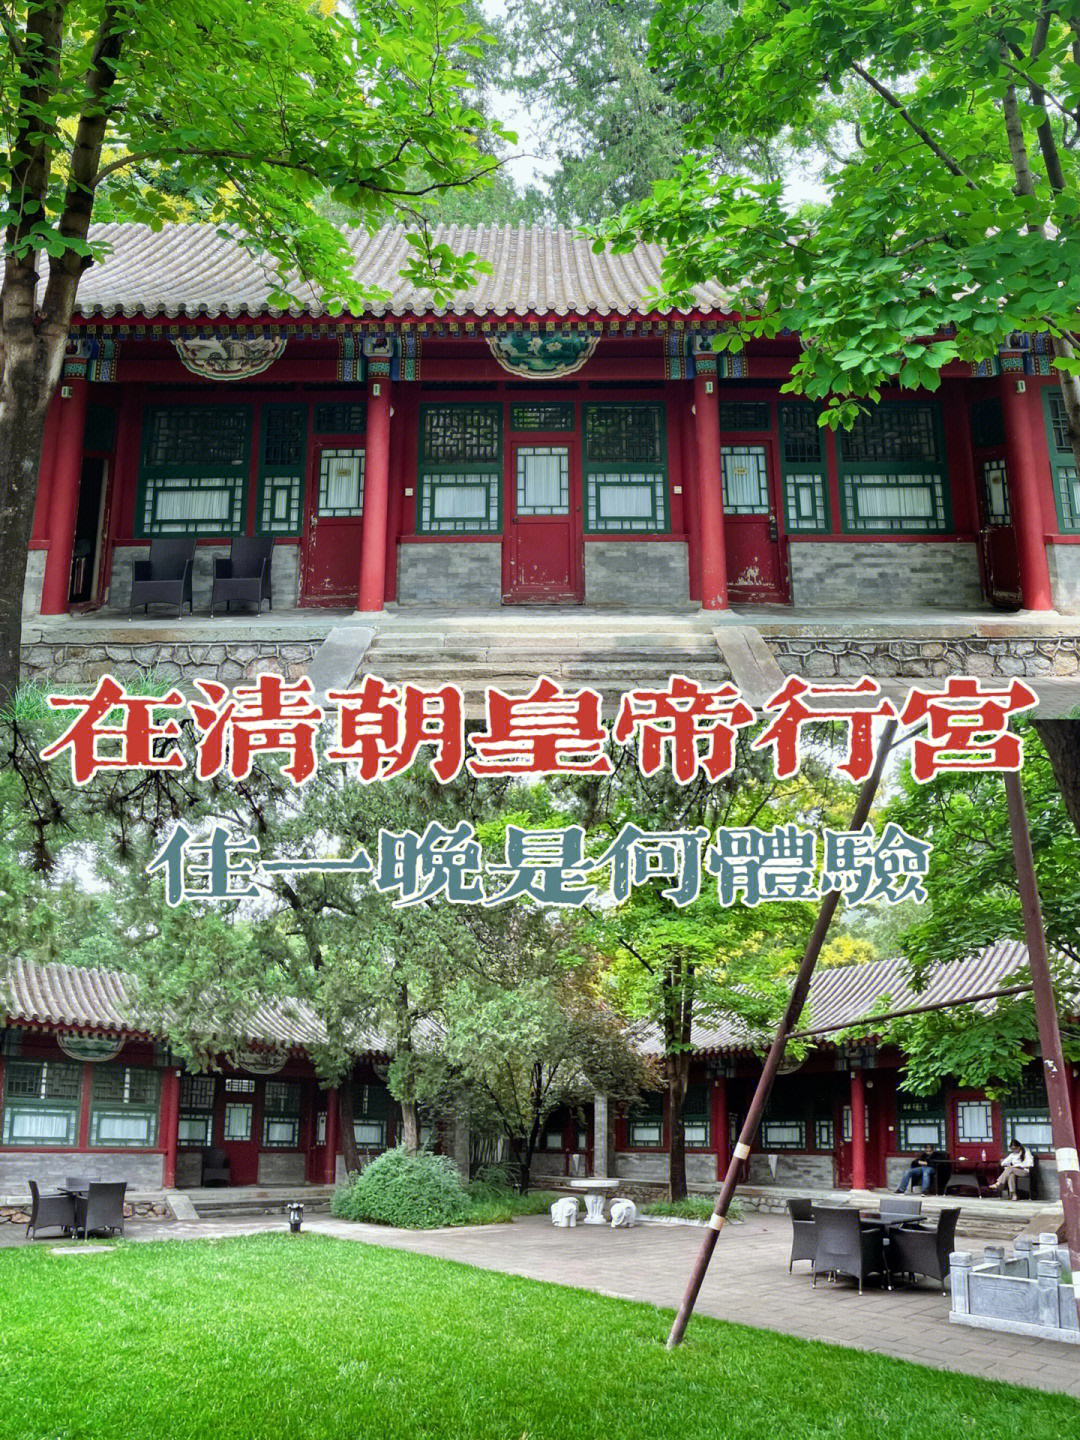 隐藏在北京植物园里的四合院园林式酒店